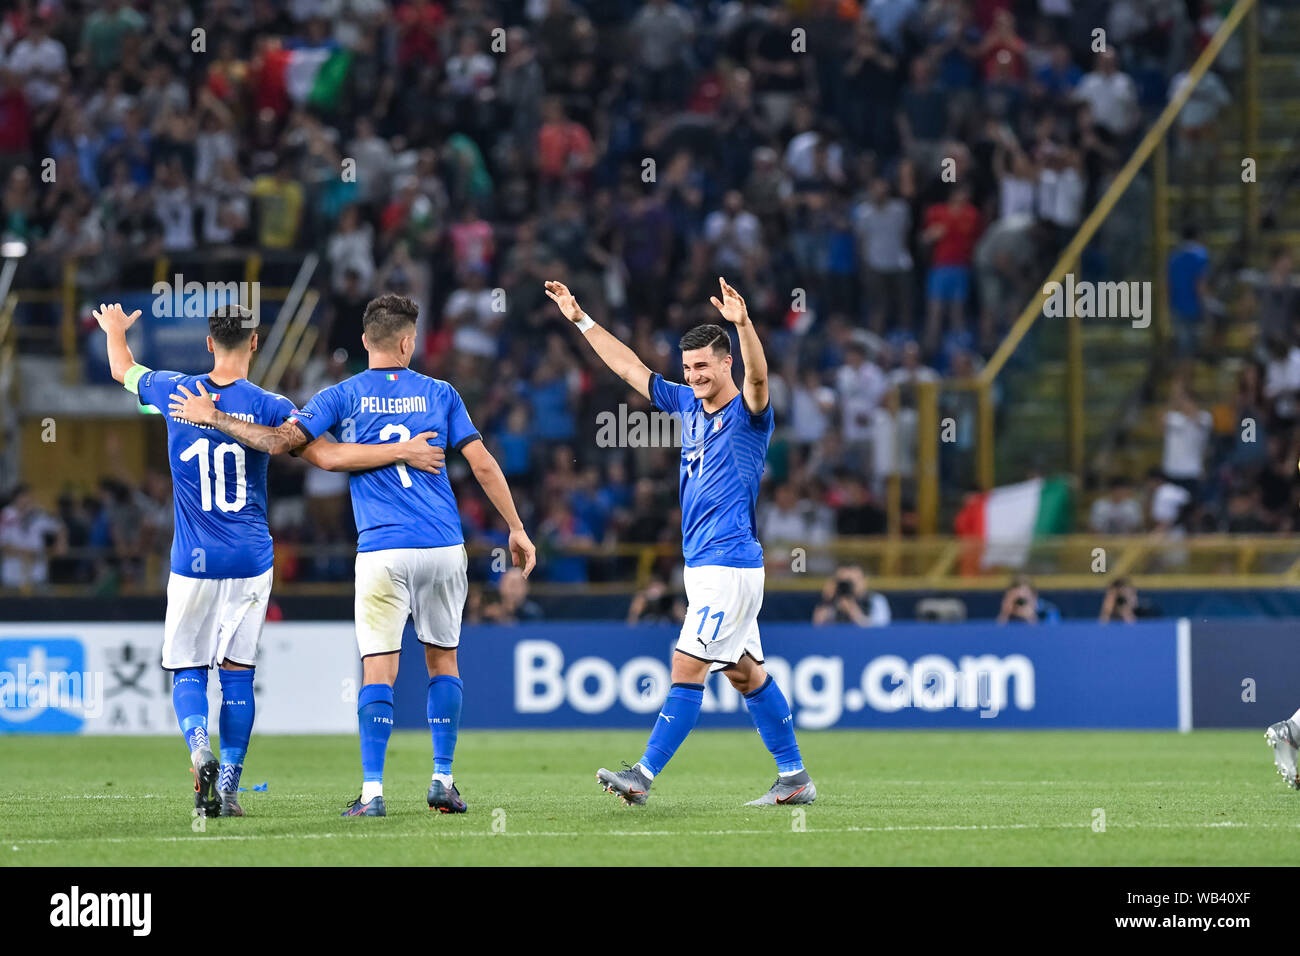 VITTORIA ITALIEN während der Europäischen unter 21 2019 - Turnier Phase - Italien gegen Spanien, Bologna, Italien, 16. Juni 2019, Fußball italienische Fußballmannschaft Stockfoto